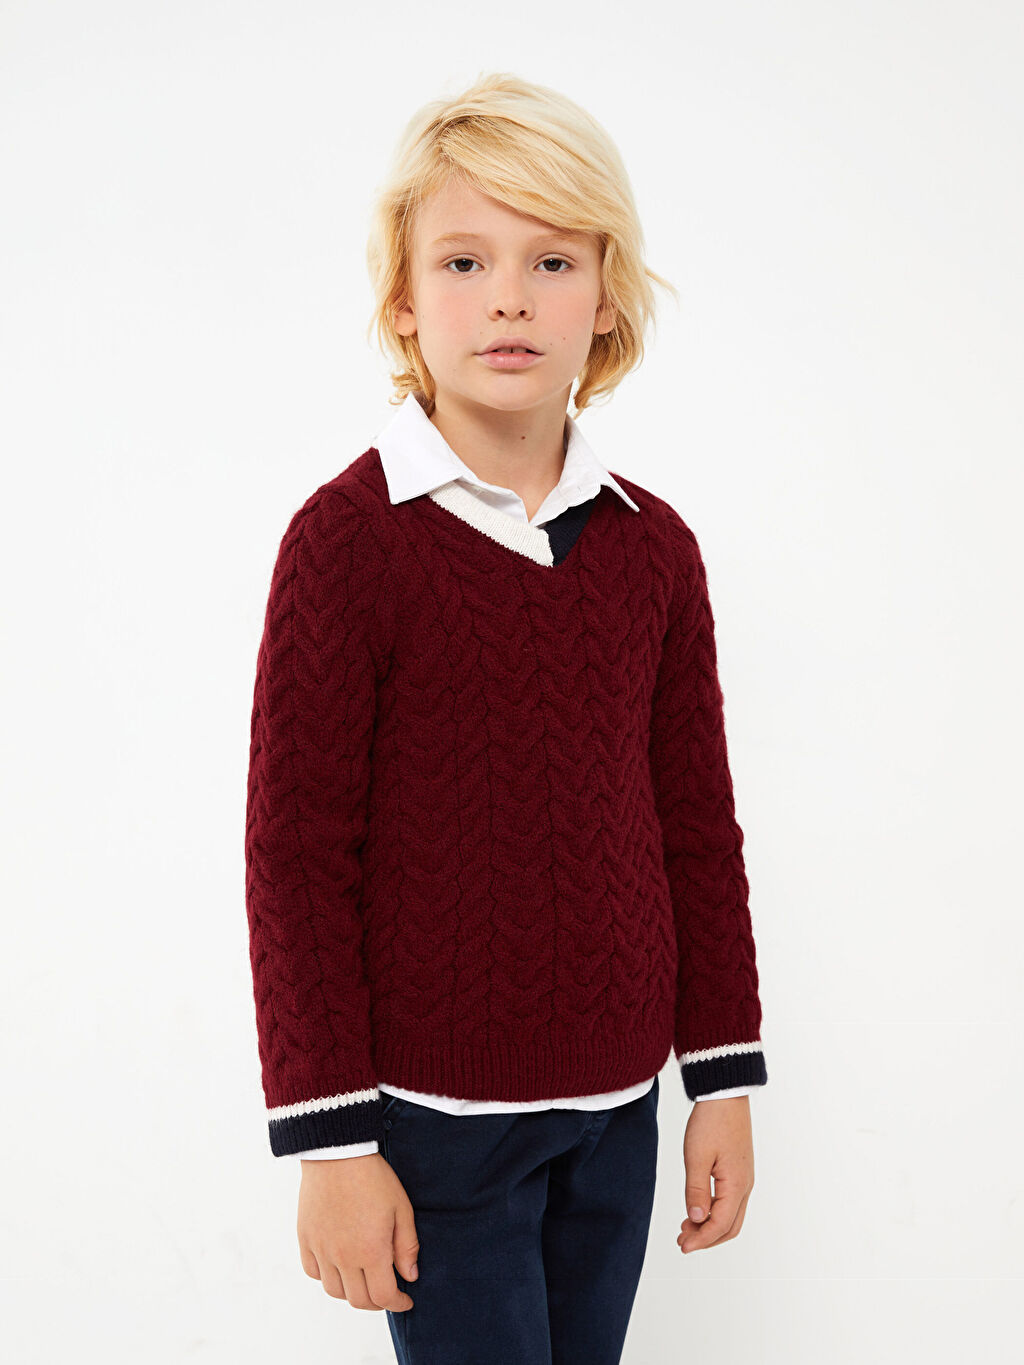 Трикотажный свитер для мальчика с длинным рукавом и V-образным вырезом Southblue мужской трикотажный свитер с v образным вырезом длинным рукавом